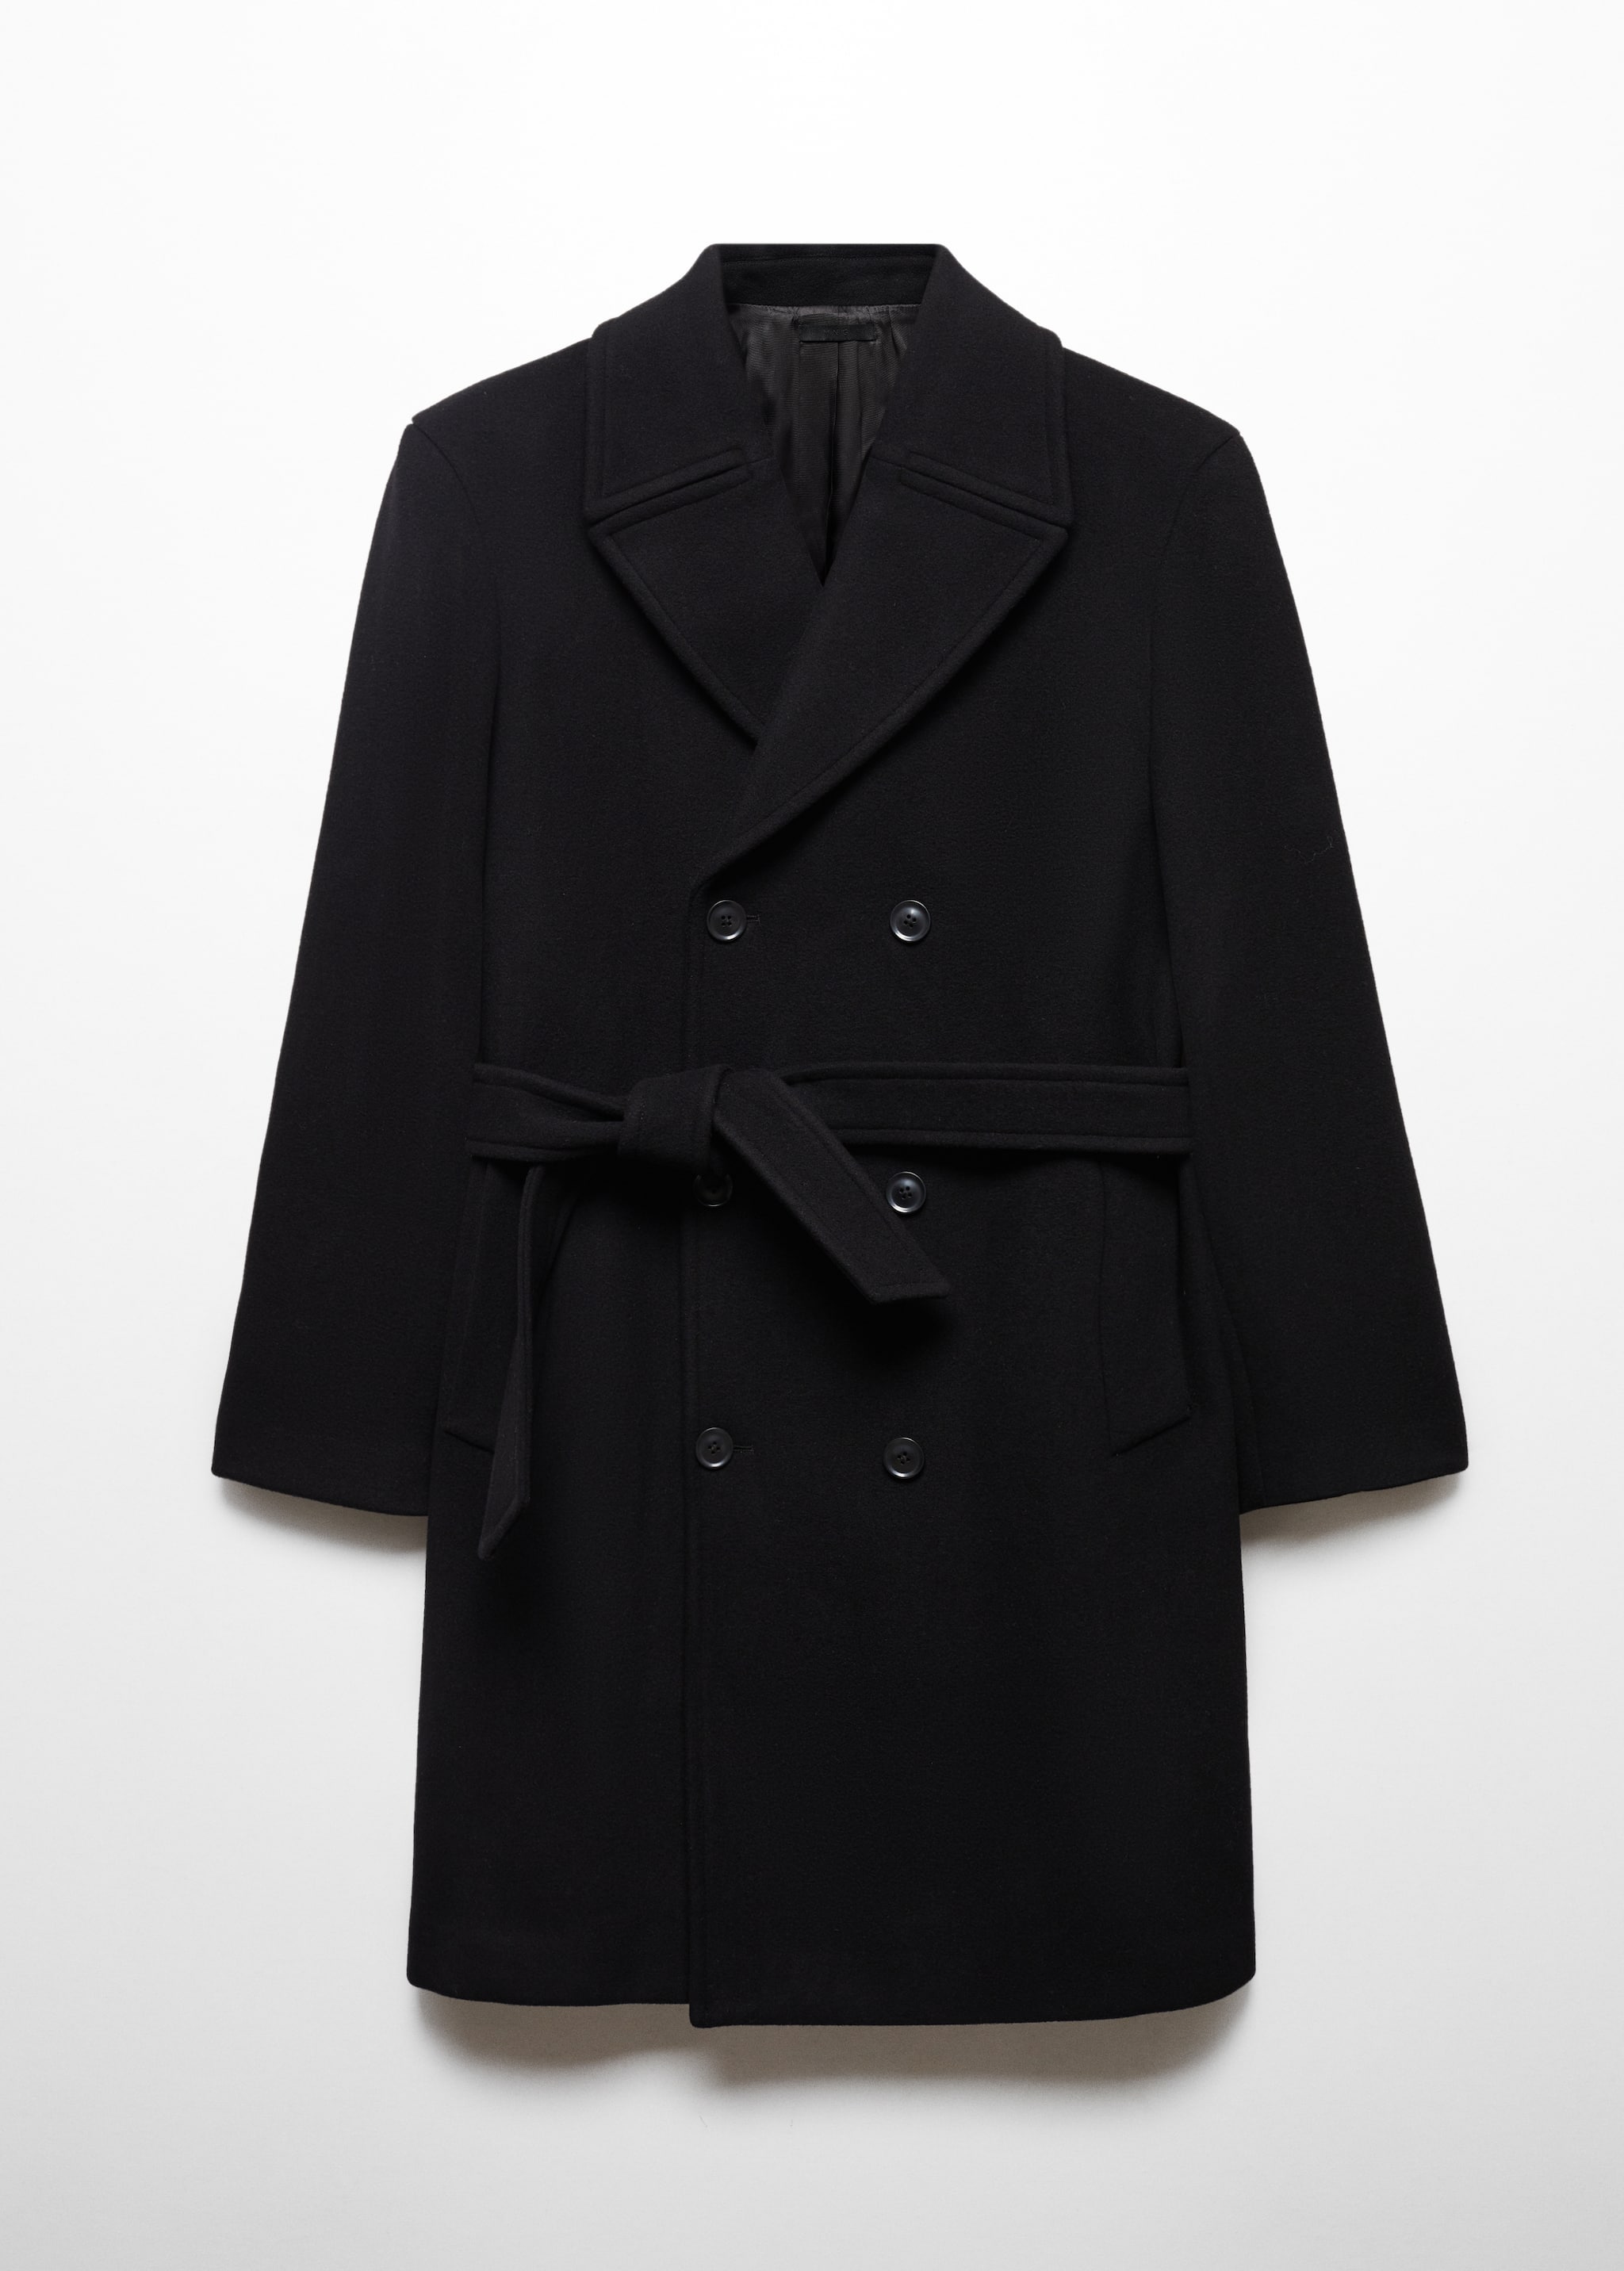 Пальто ручной работы из шерсти с поясом - Изделие без модели